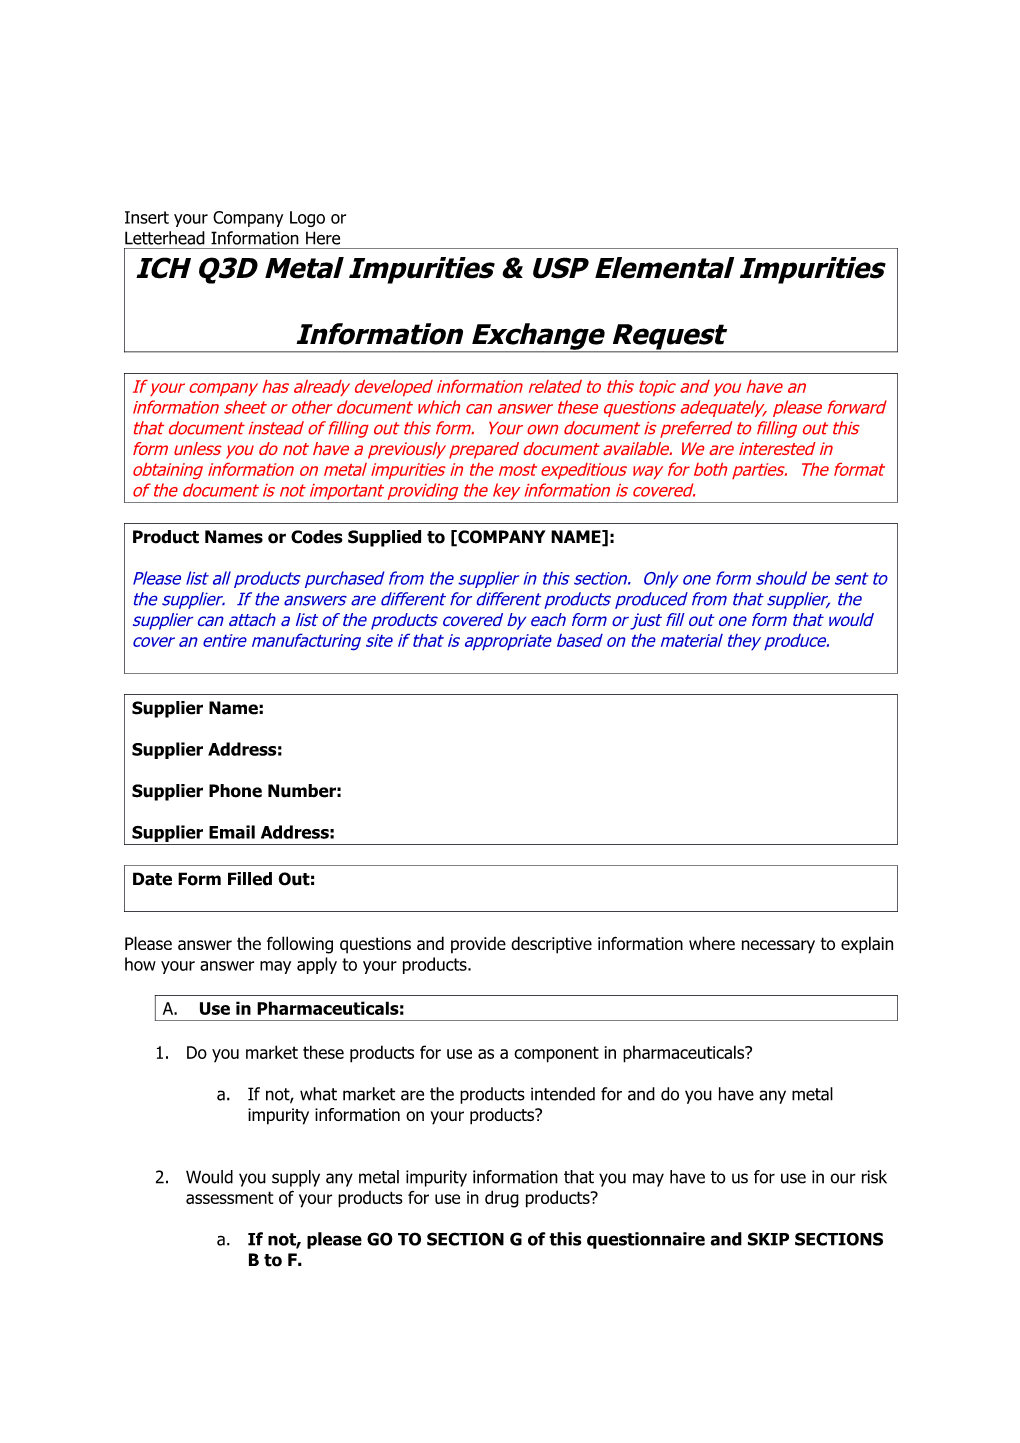 ICH Q3D Metal Impurities & USP Elemental Impurities